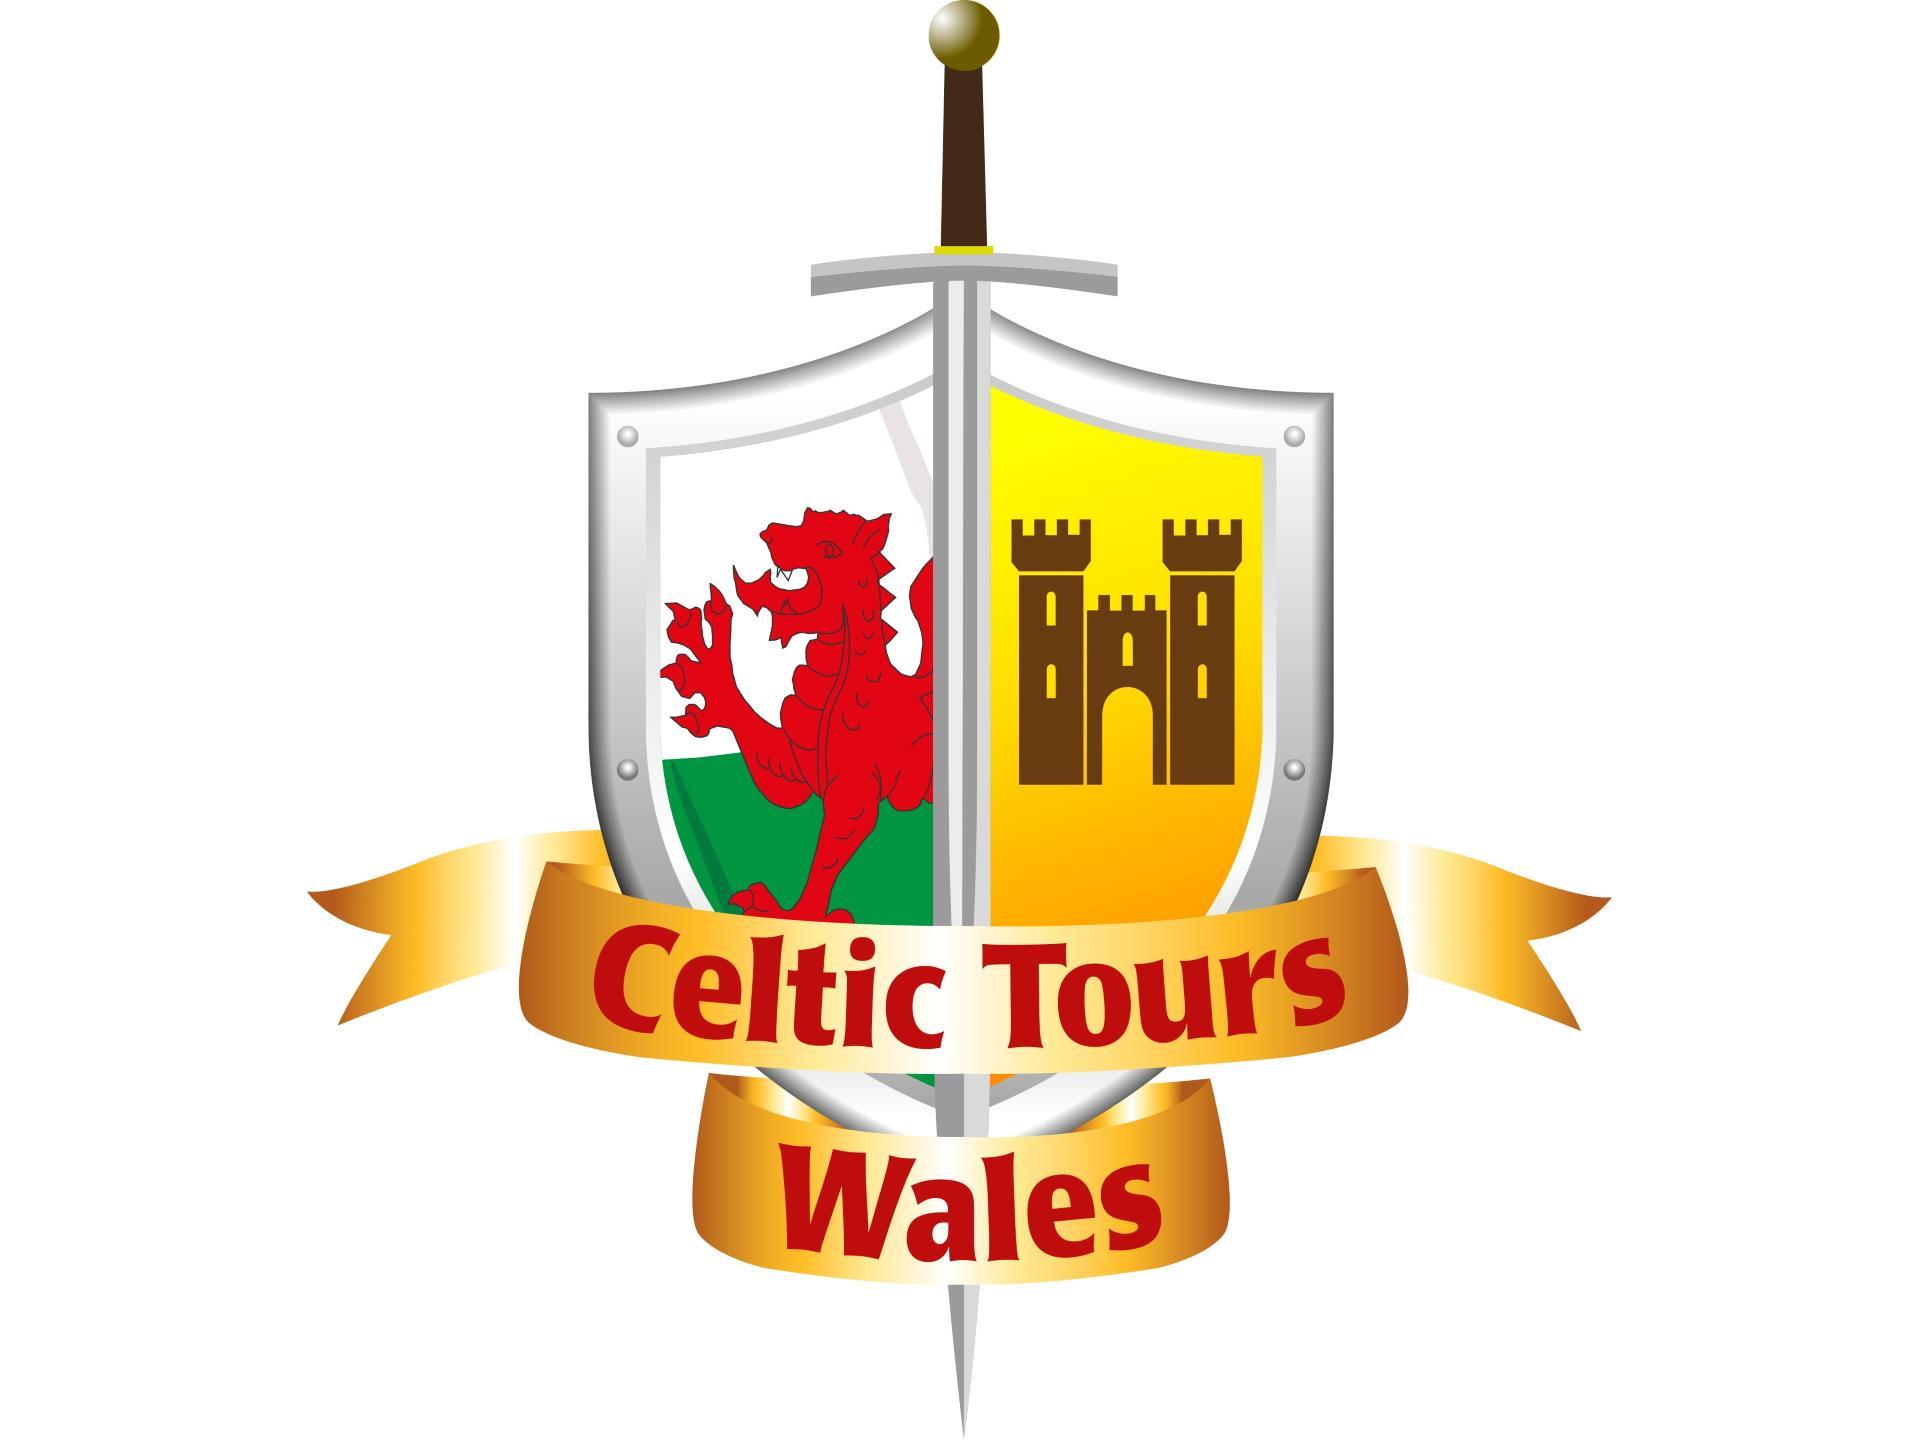 Celtic Tours Wales logo